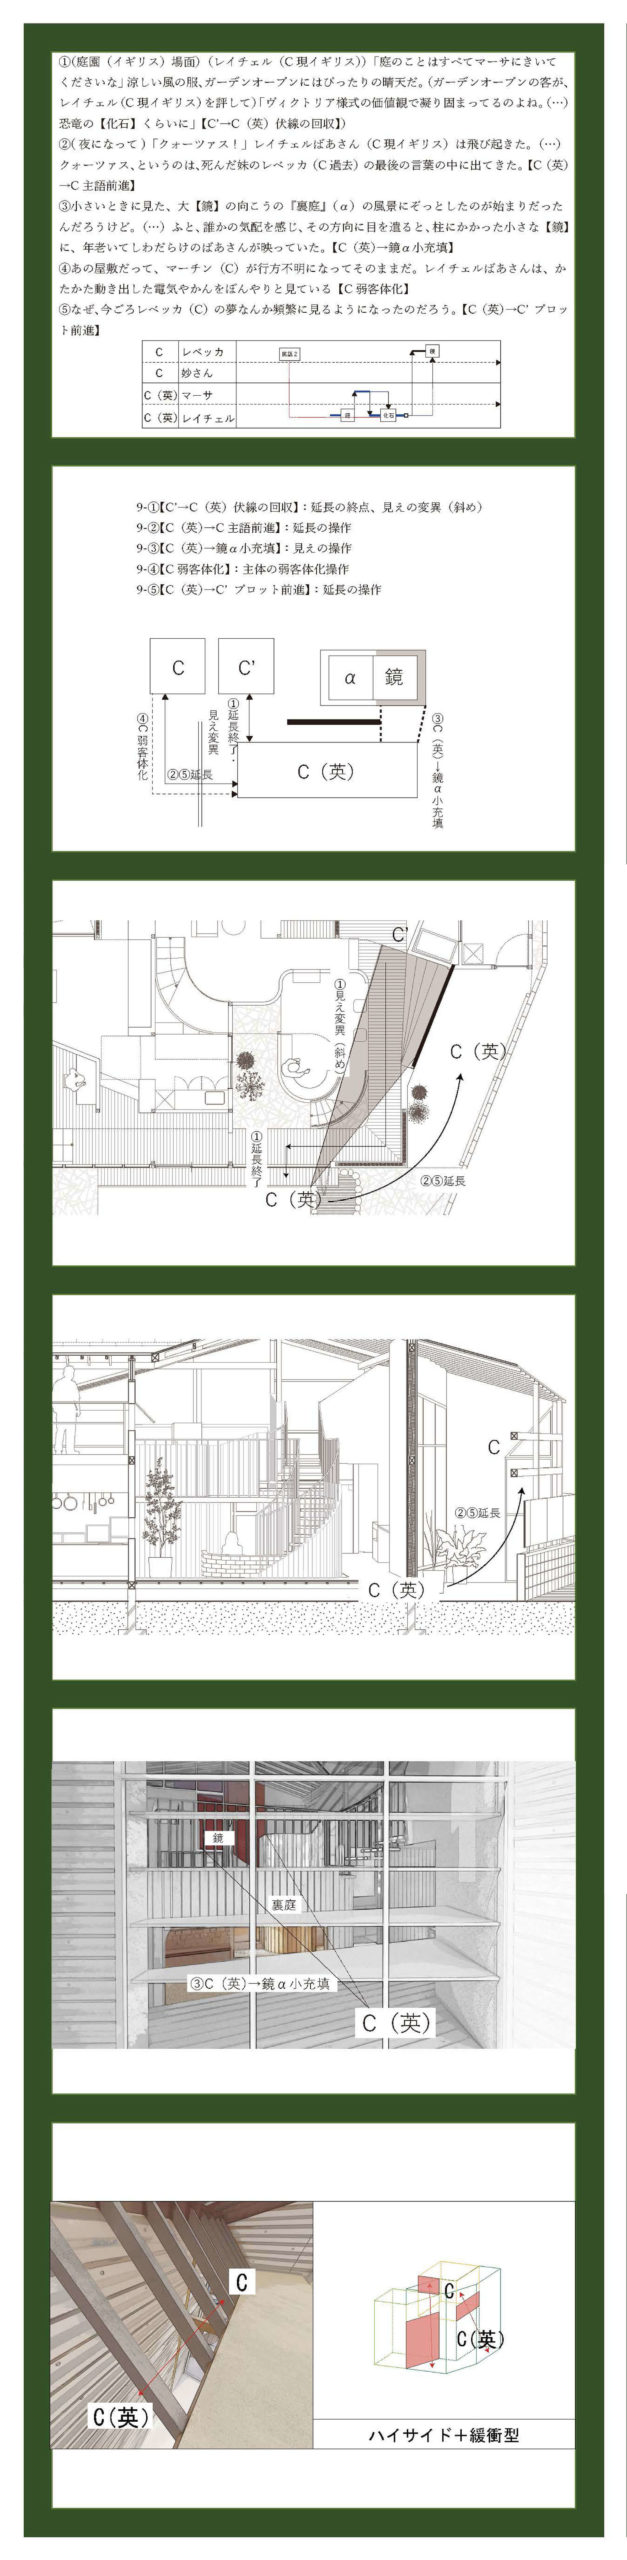 小説構造を応用した建築の提案 -梨木香歩『裏庭』の分析を通して--11